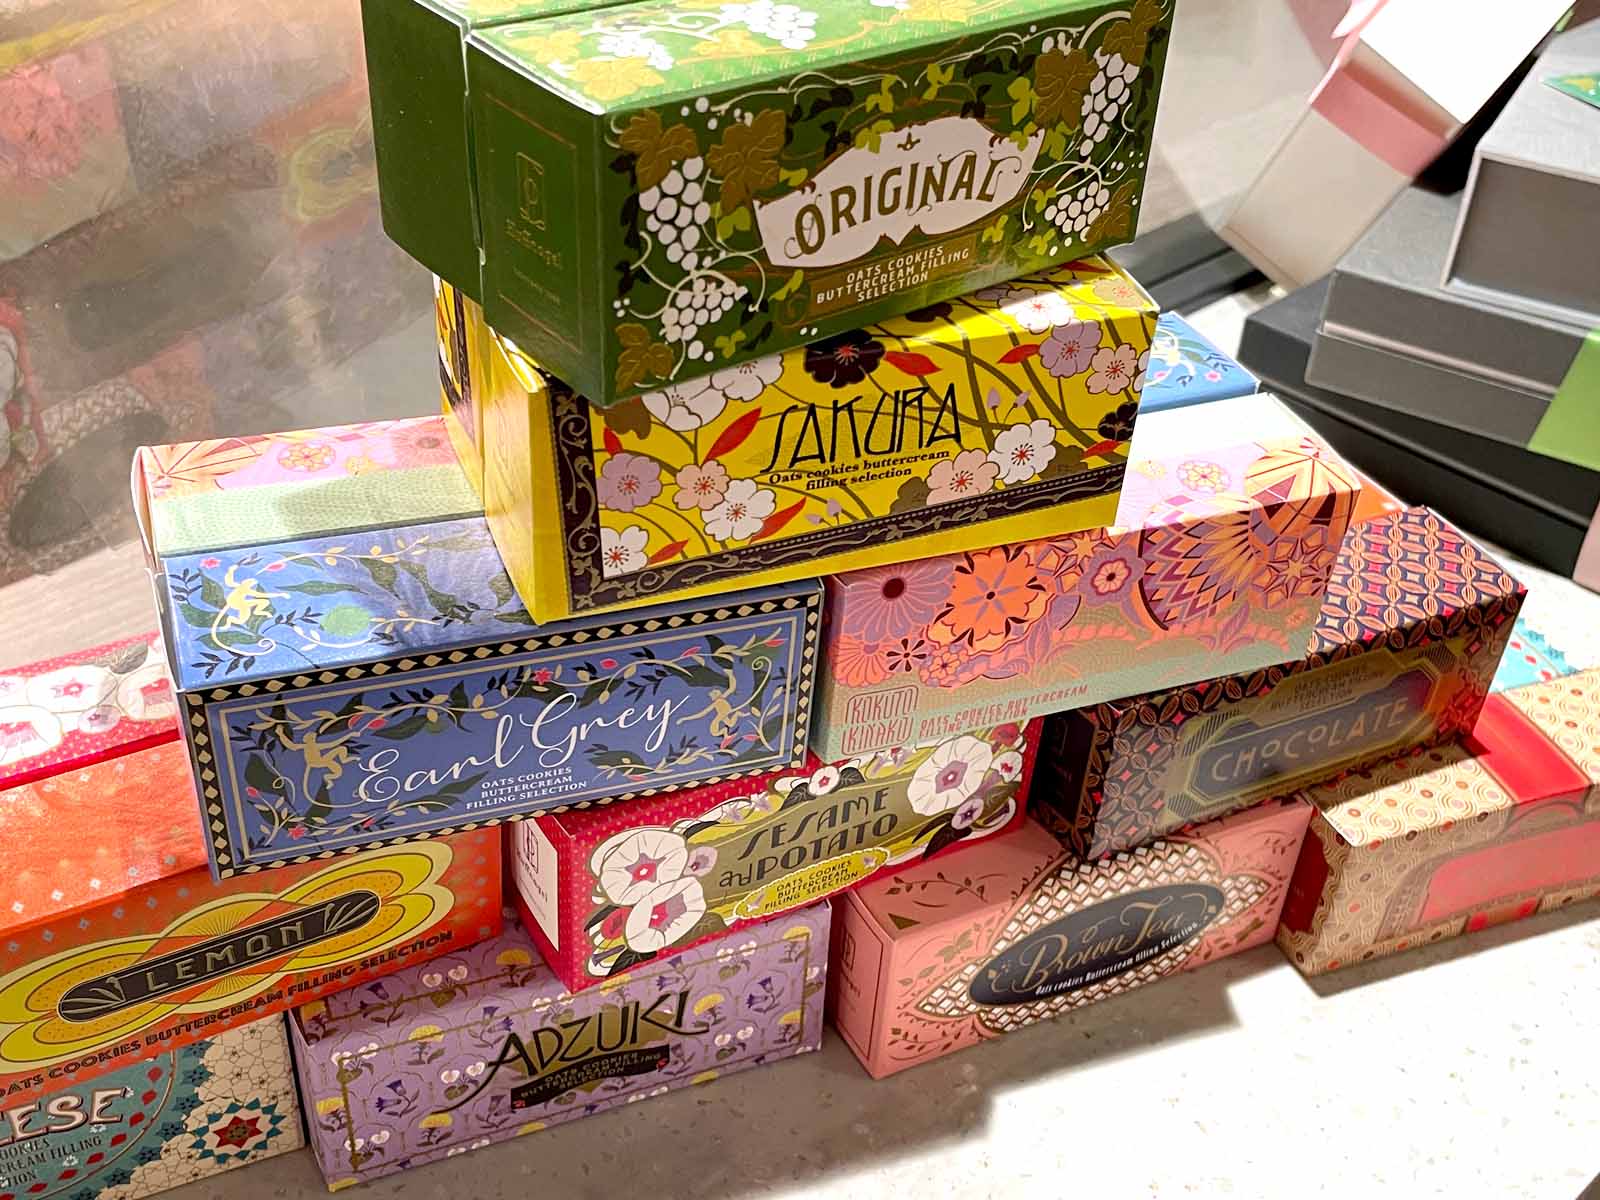 横浜かをりの新ブランド「Huffnagel(フフナゲール)」のバタークリームサンド買った！／横浜赤レンガ倉庫